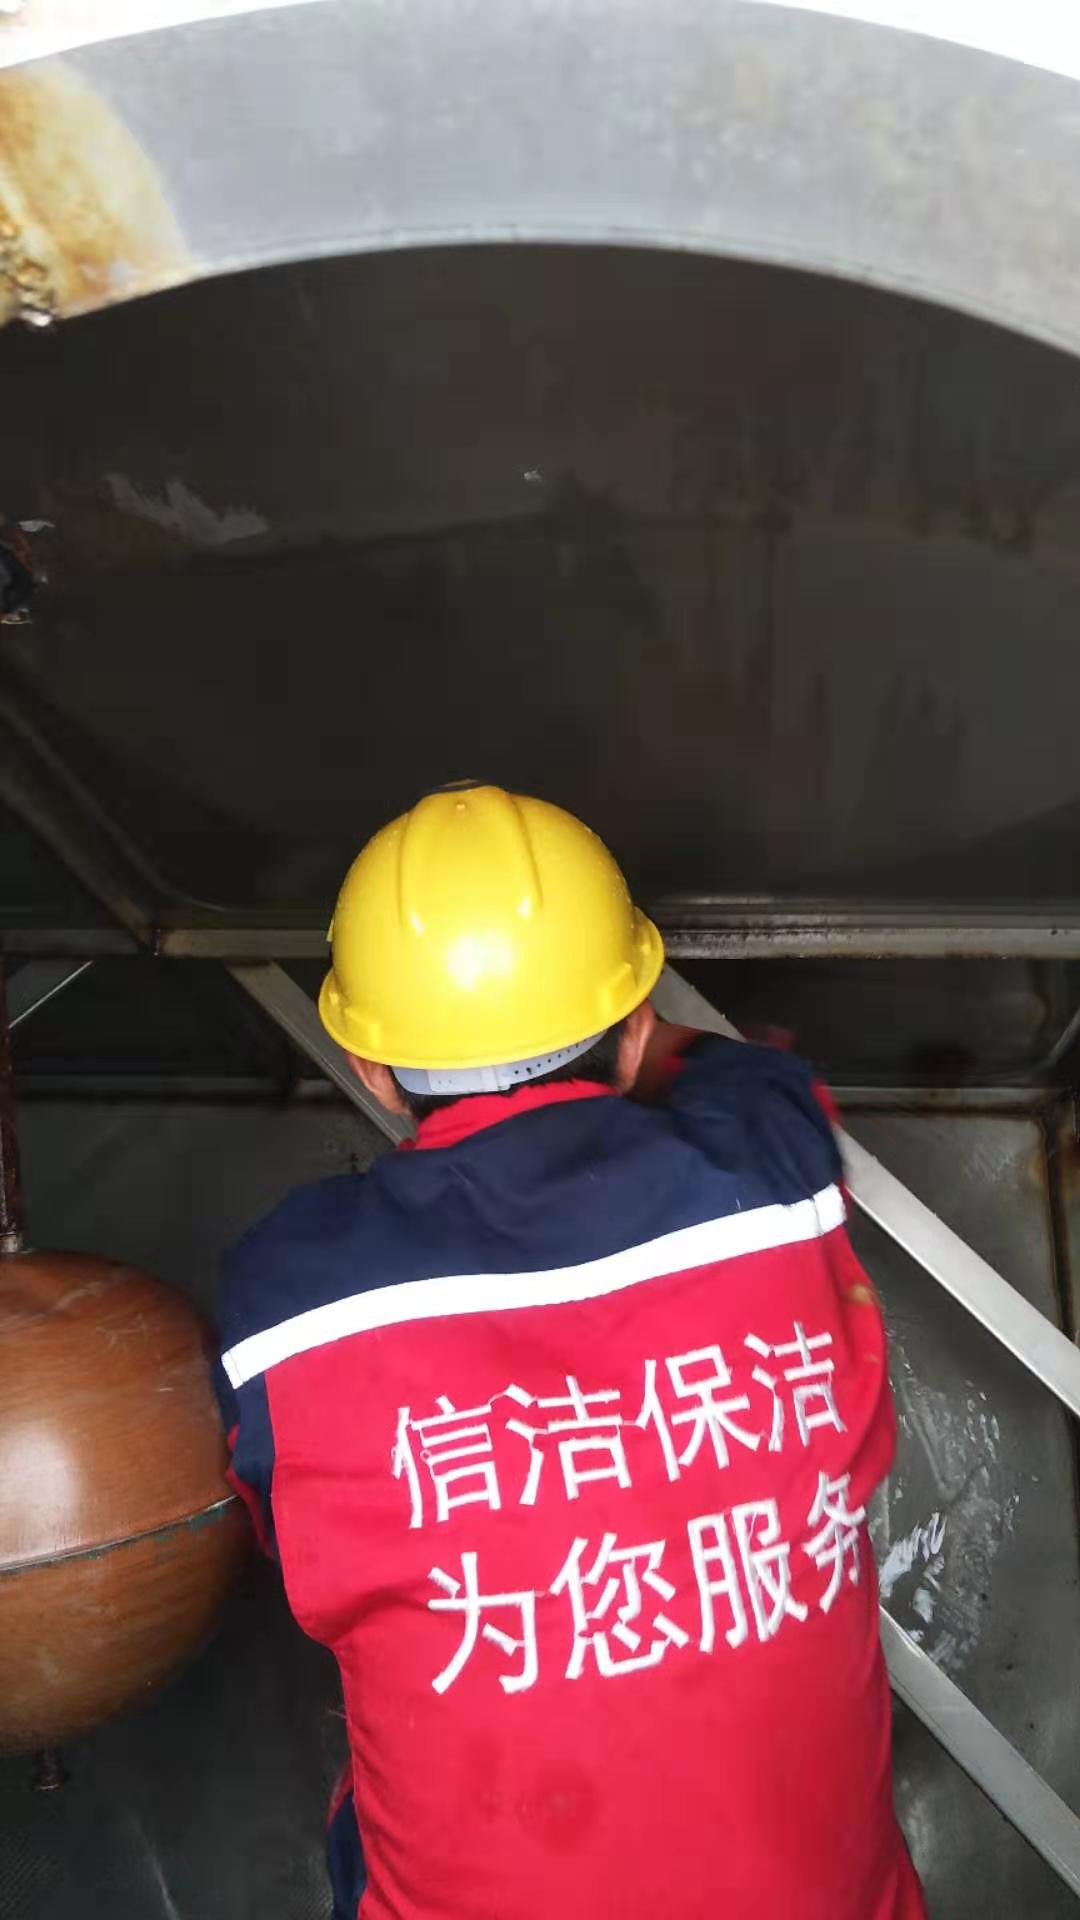 一站式企业服务平台供应商上海信洁保洁服务有限公司提供上海水箱清洗公司、清洗水箱公司